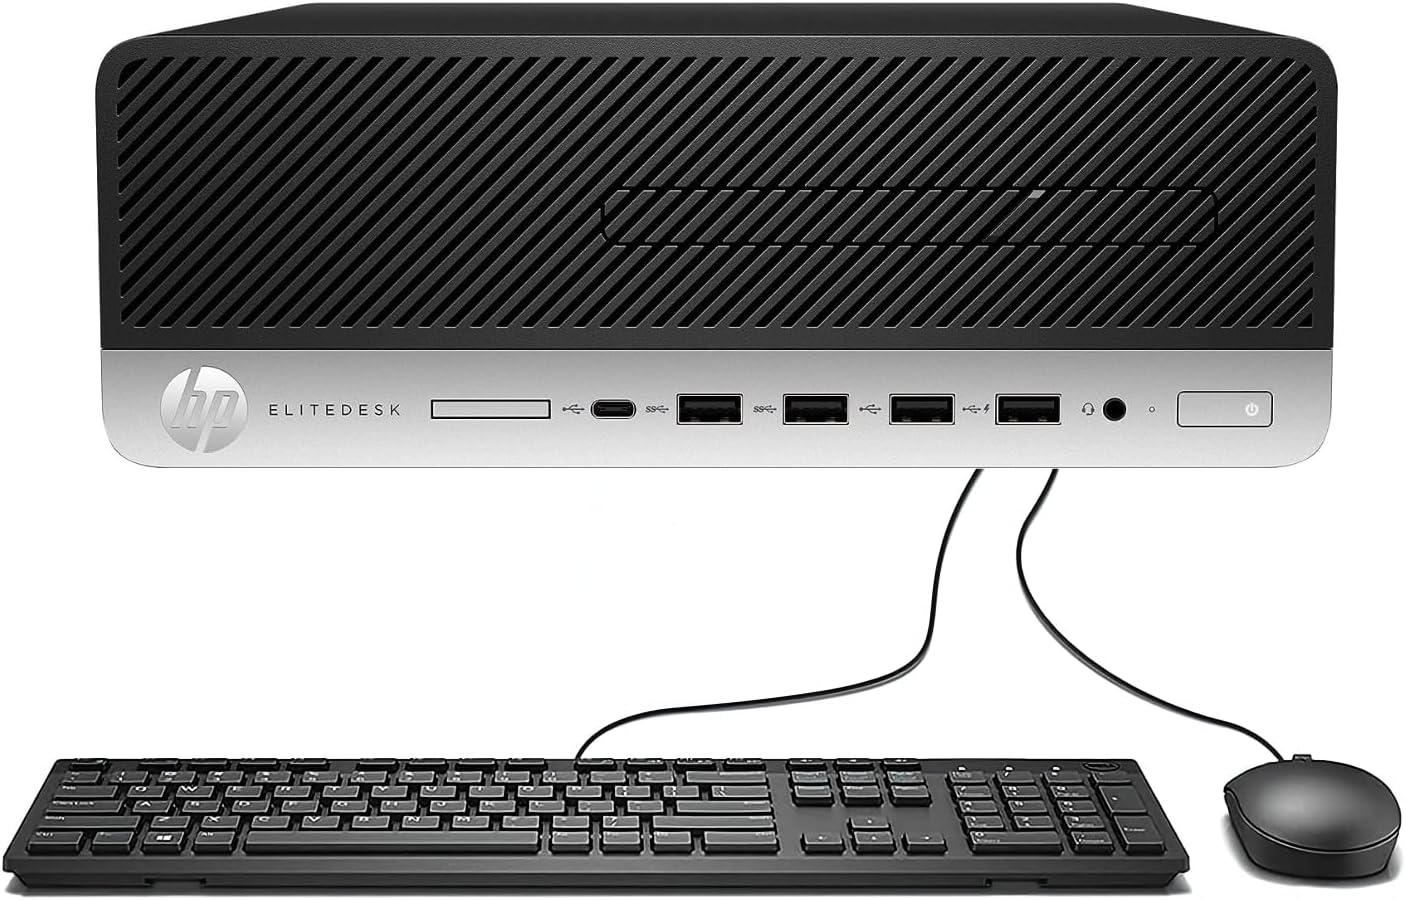 HP EliteDesk 705 G4 SFF Desktop, AMD A10-9700 3.5GHz, 16GB RAM, 1TB SSD, WiFi, BT, Mouse and Keyboard, Windows 10 Pro(Renewed)